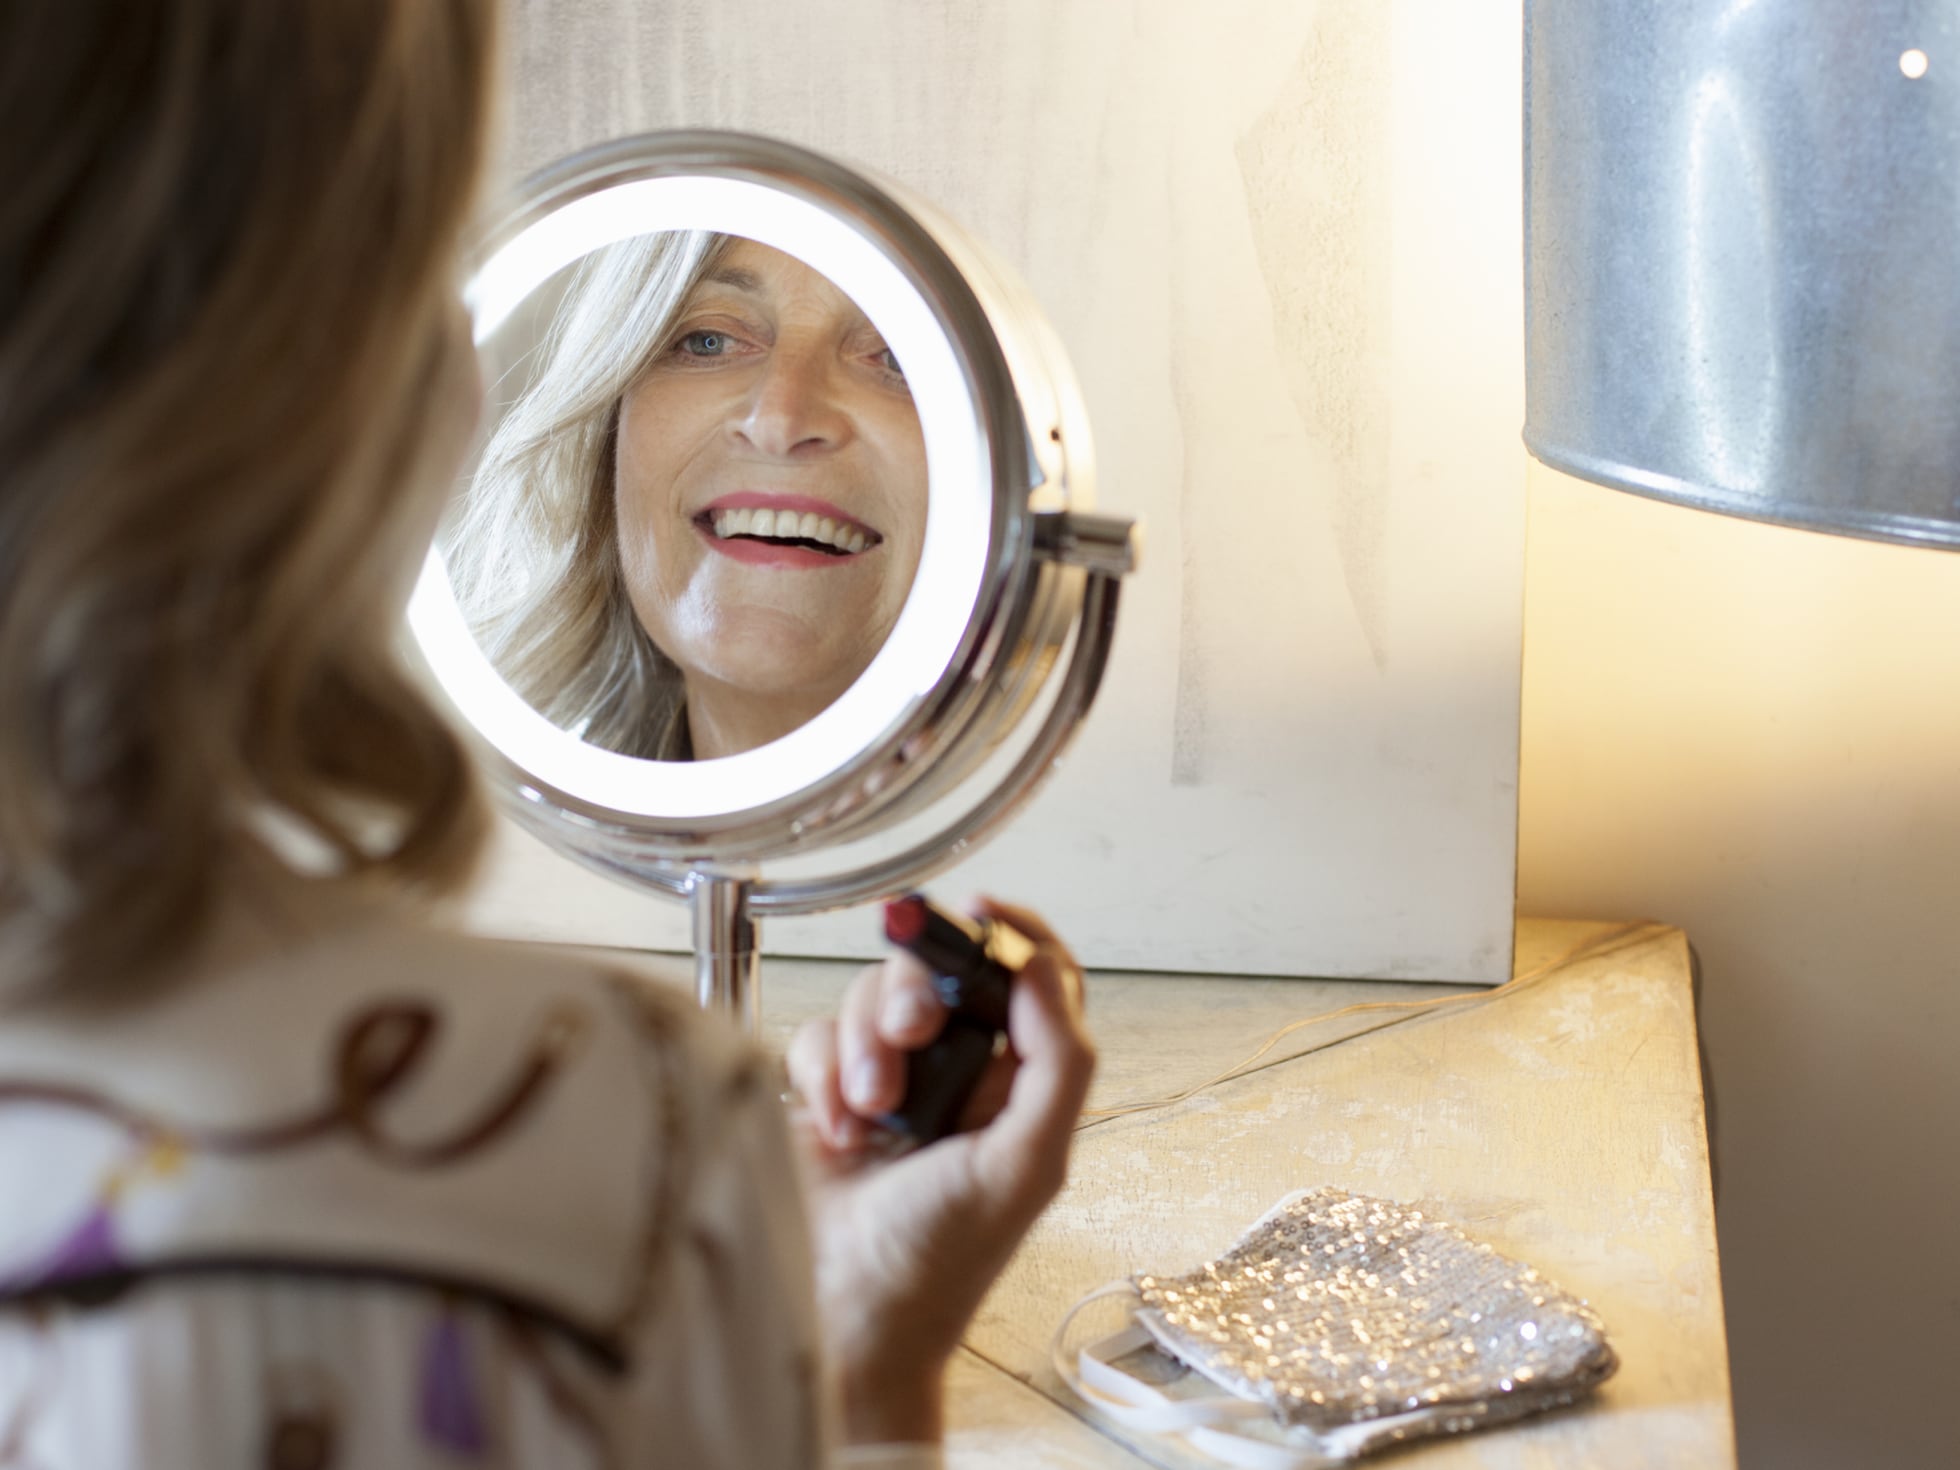 Los más vendidos: Mejor Espejos para Maquillaje